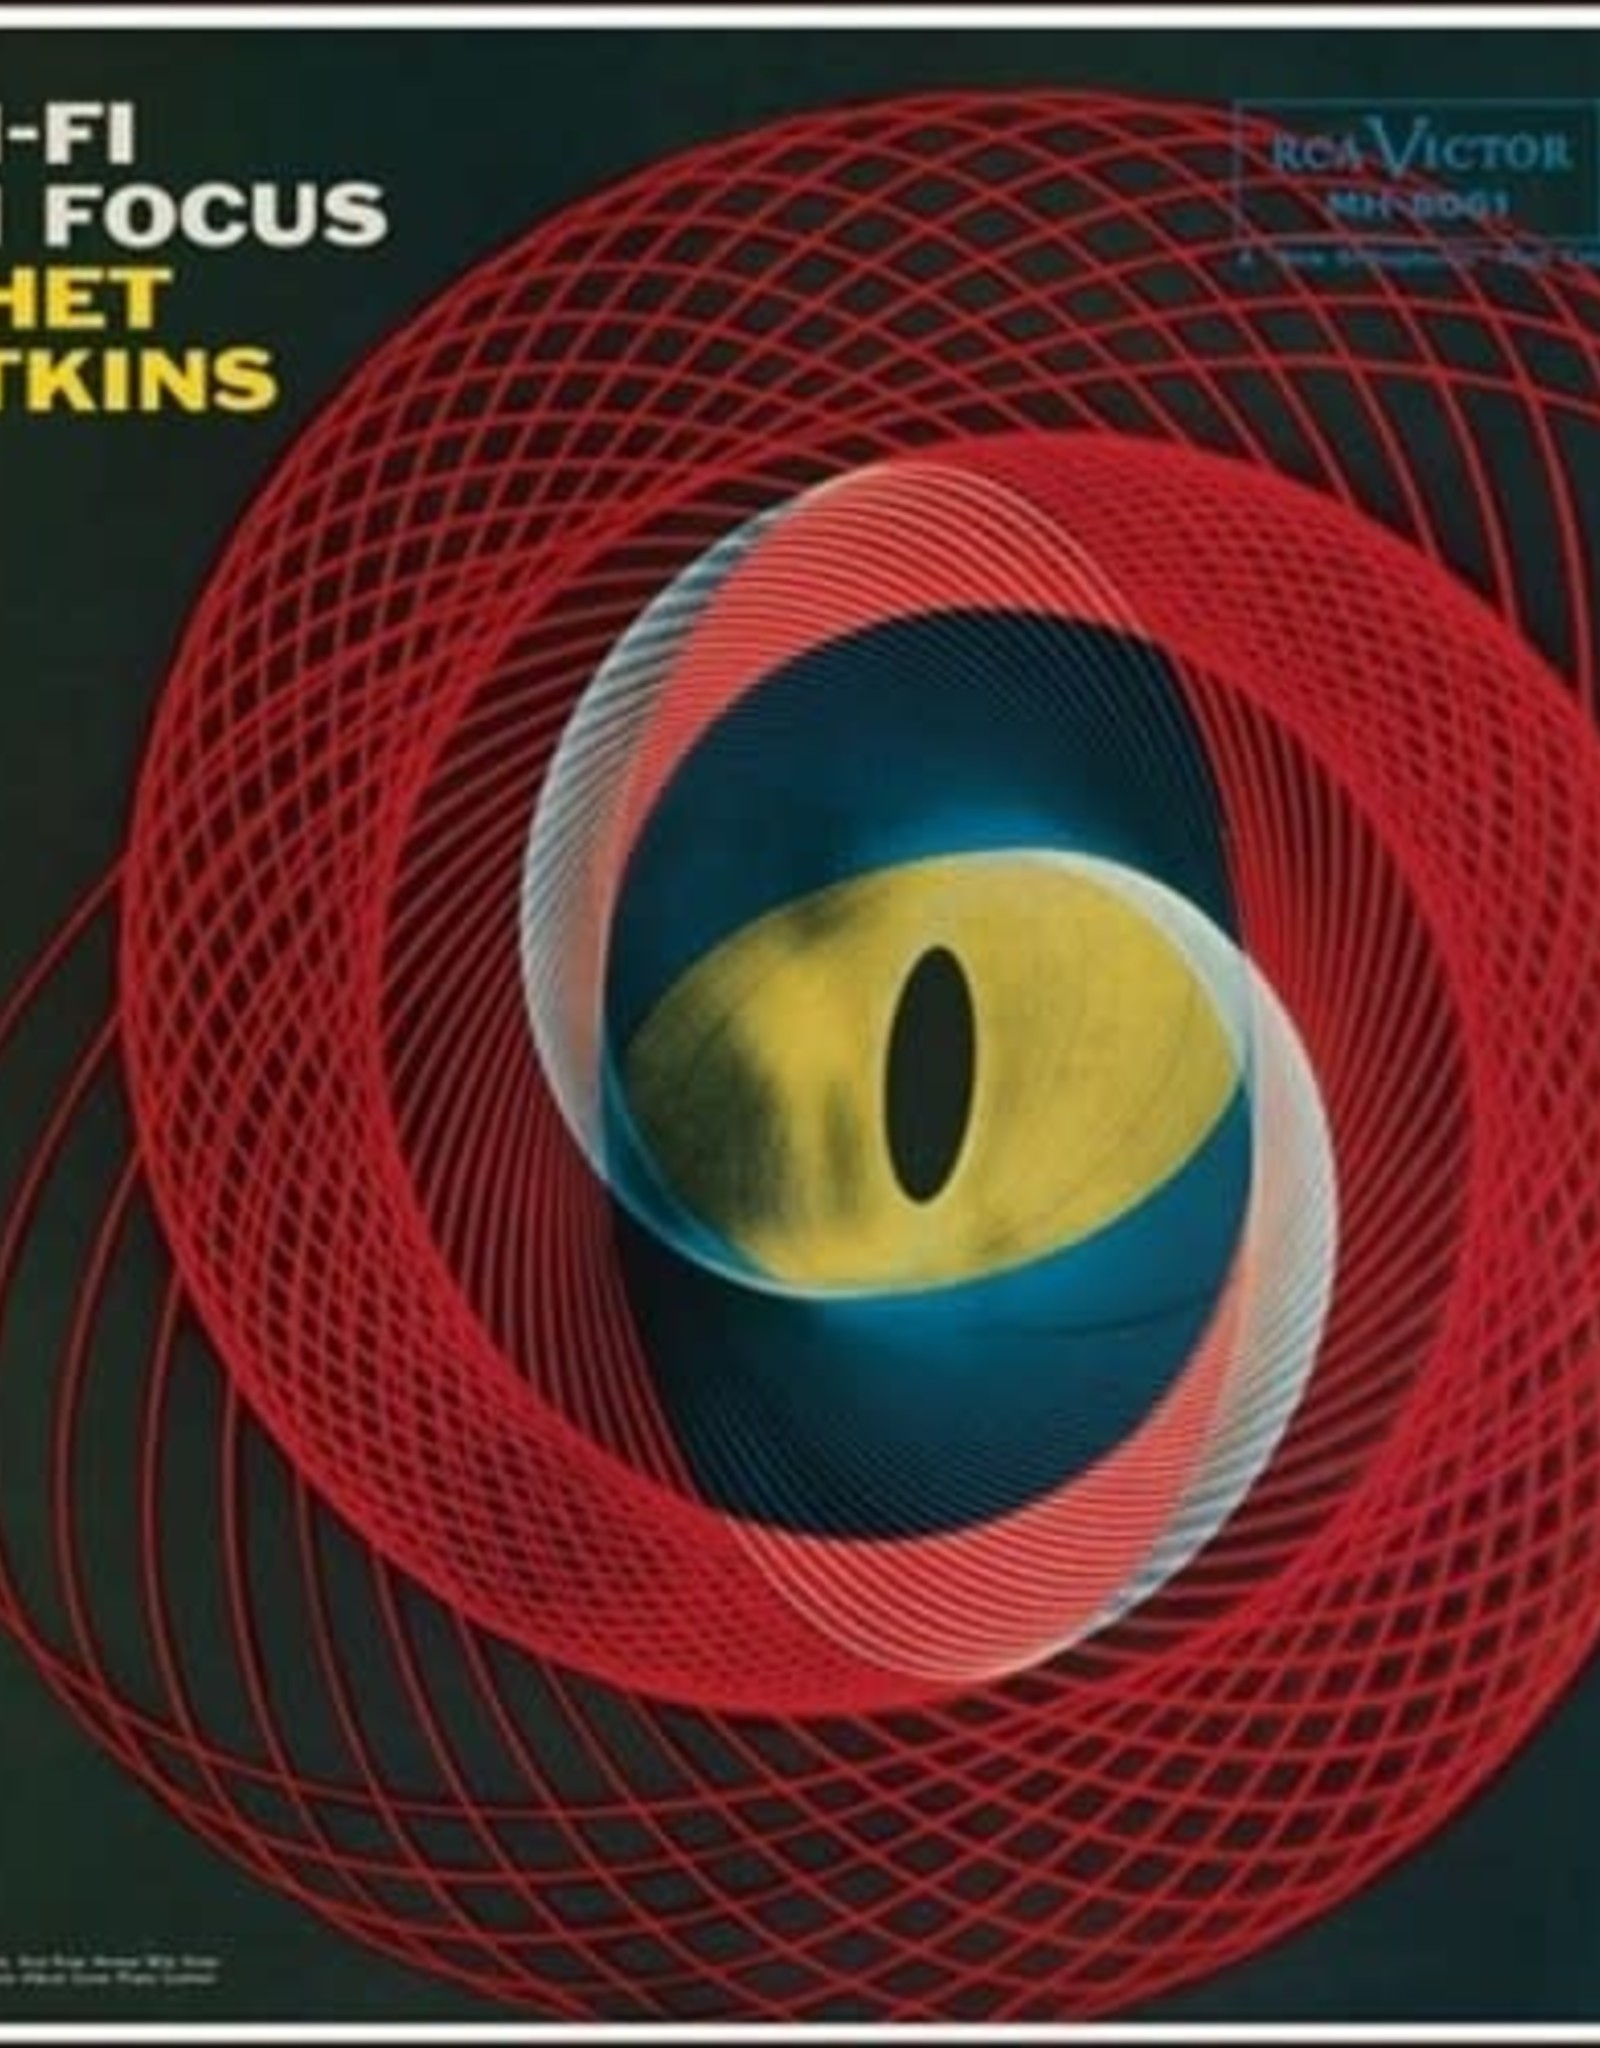 Chet Atkins - Hi-Fi Focus